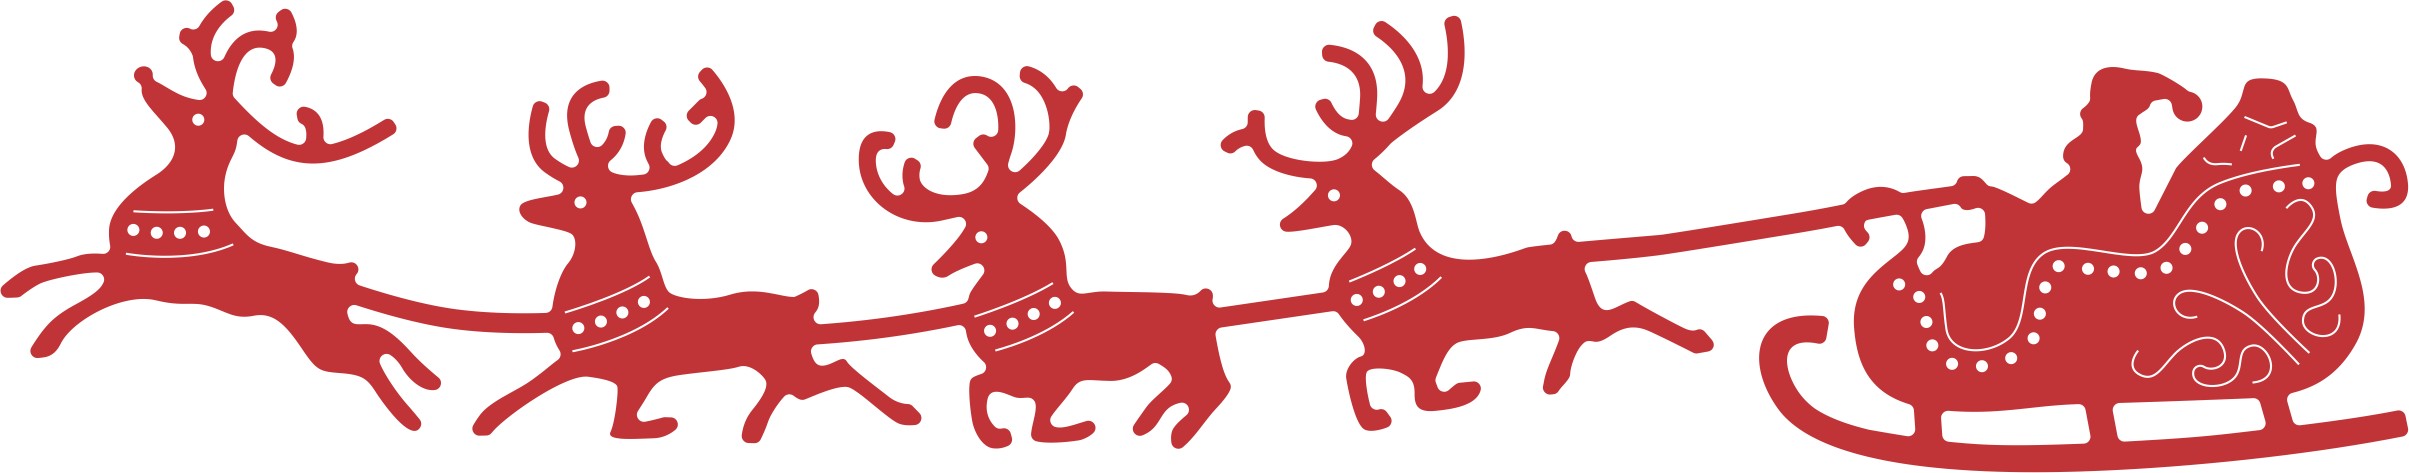 clipart santa and sleigh - photo #24